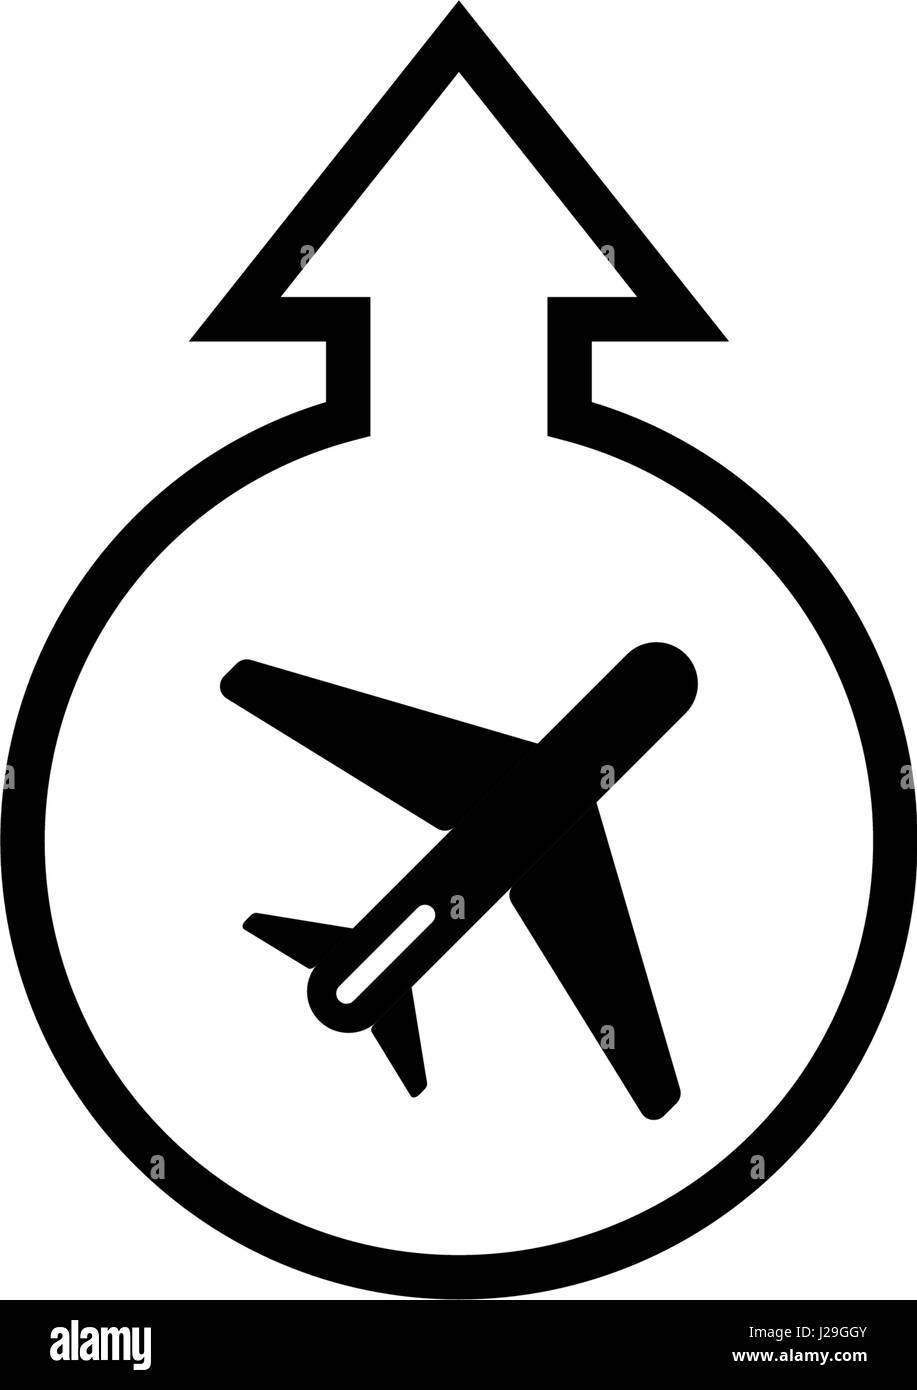 Vektor Icon, Airport-Symbol. Start und Landung des Flugzeugs. Isoliert auf weißem Hintergrund. Stock Vektor